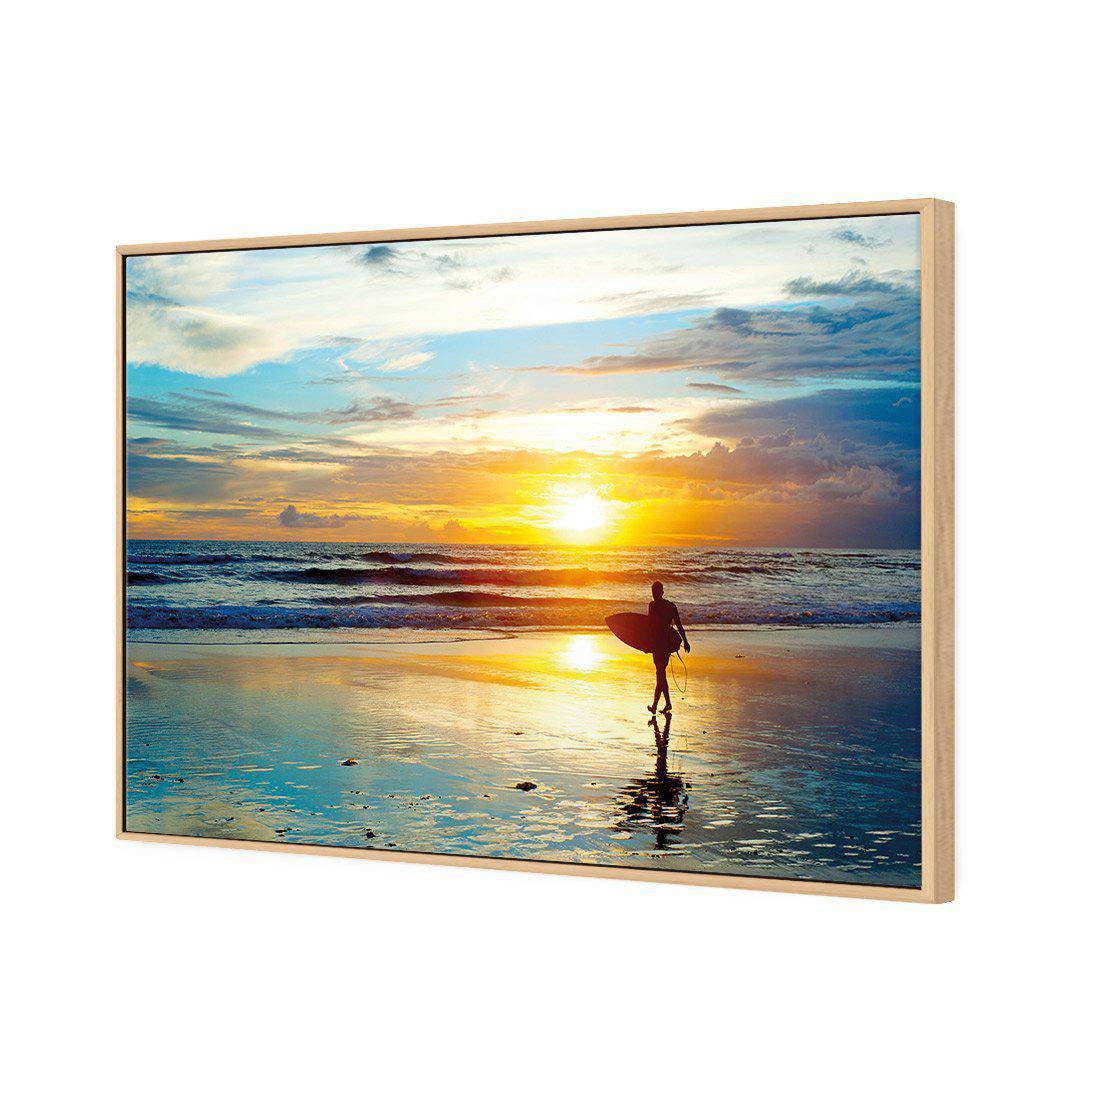 Sunset Surf Canvas Art-Canvas-Wall Art Designs-45x30cm-Canvas - Oak Frame-Wall Art Designs